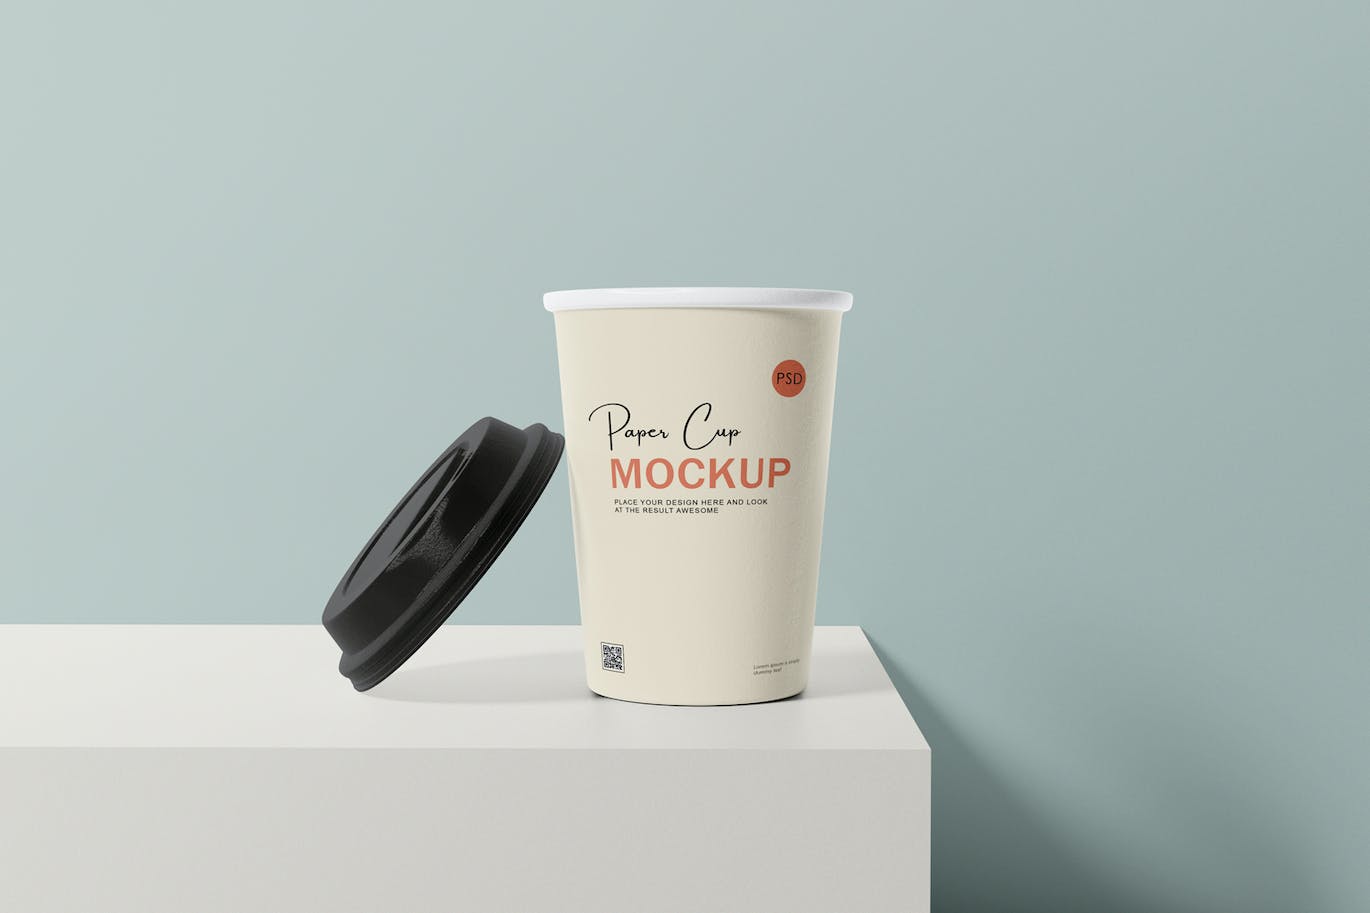 咖啡机咖啡杯包装设计样机 Coffee cup mockup with coffee machine 样机素材 第10张